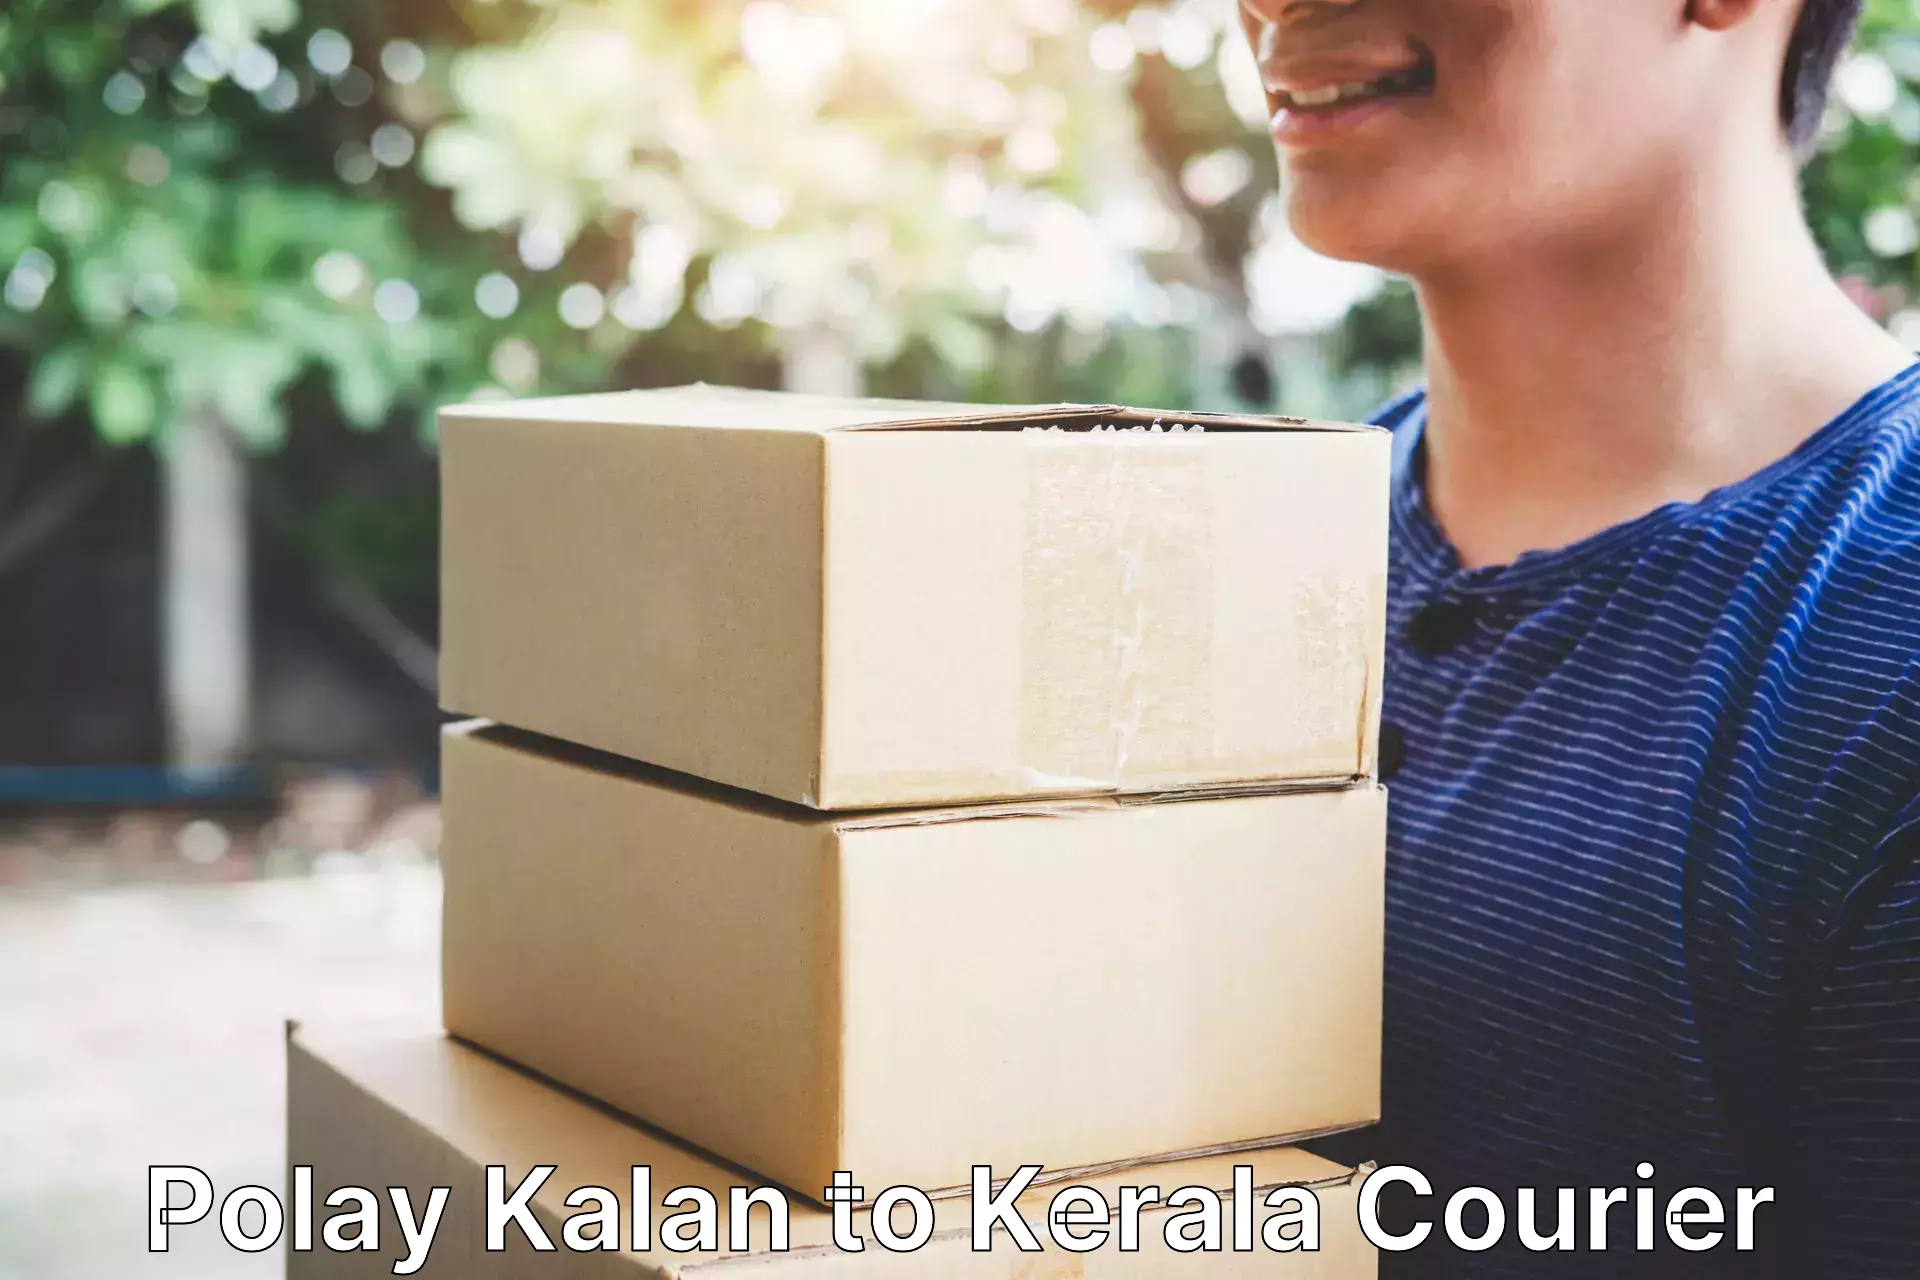 Efficient freight service Polay Kalan to Kerala